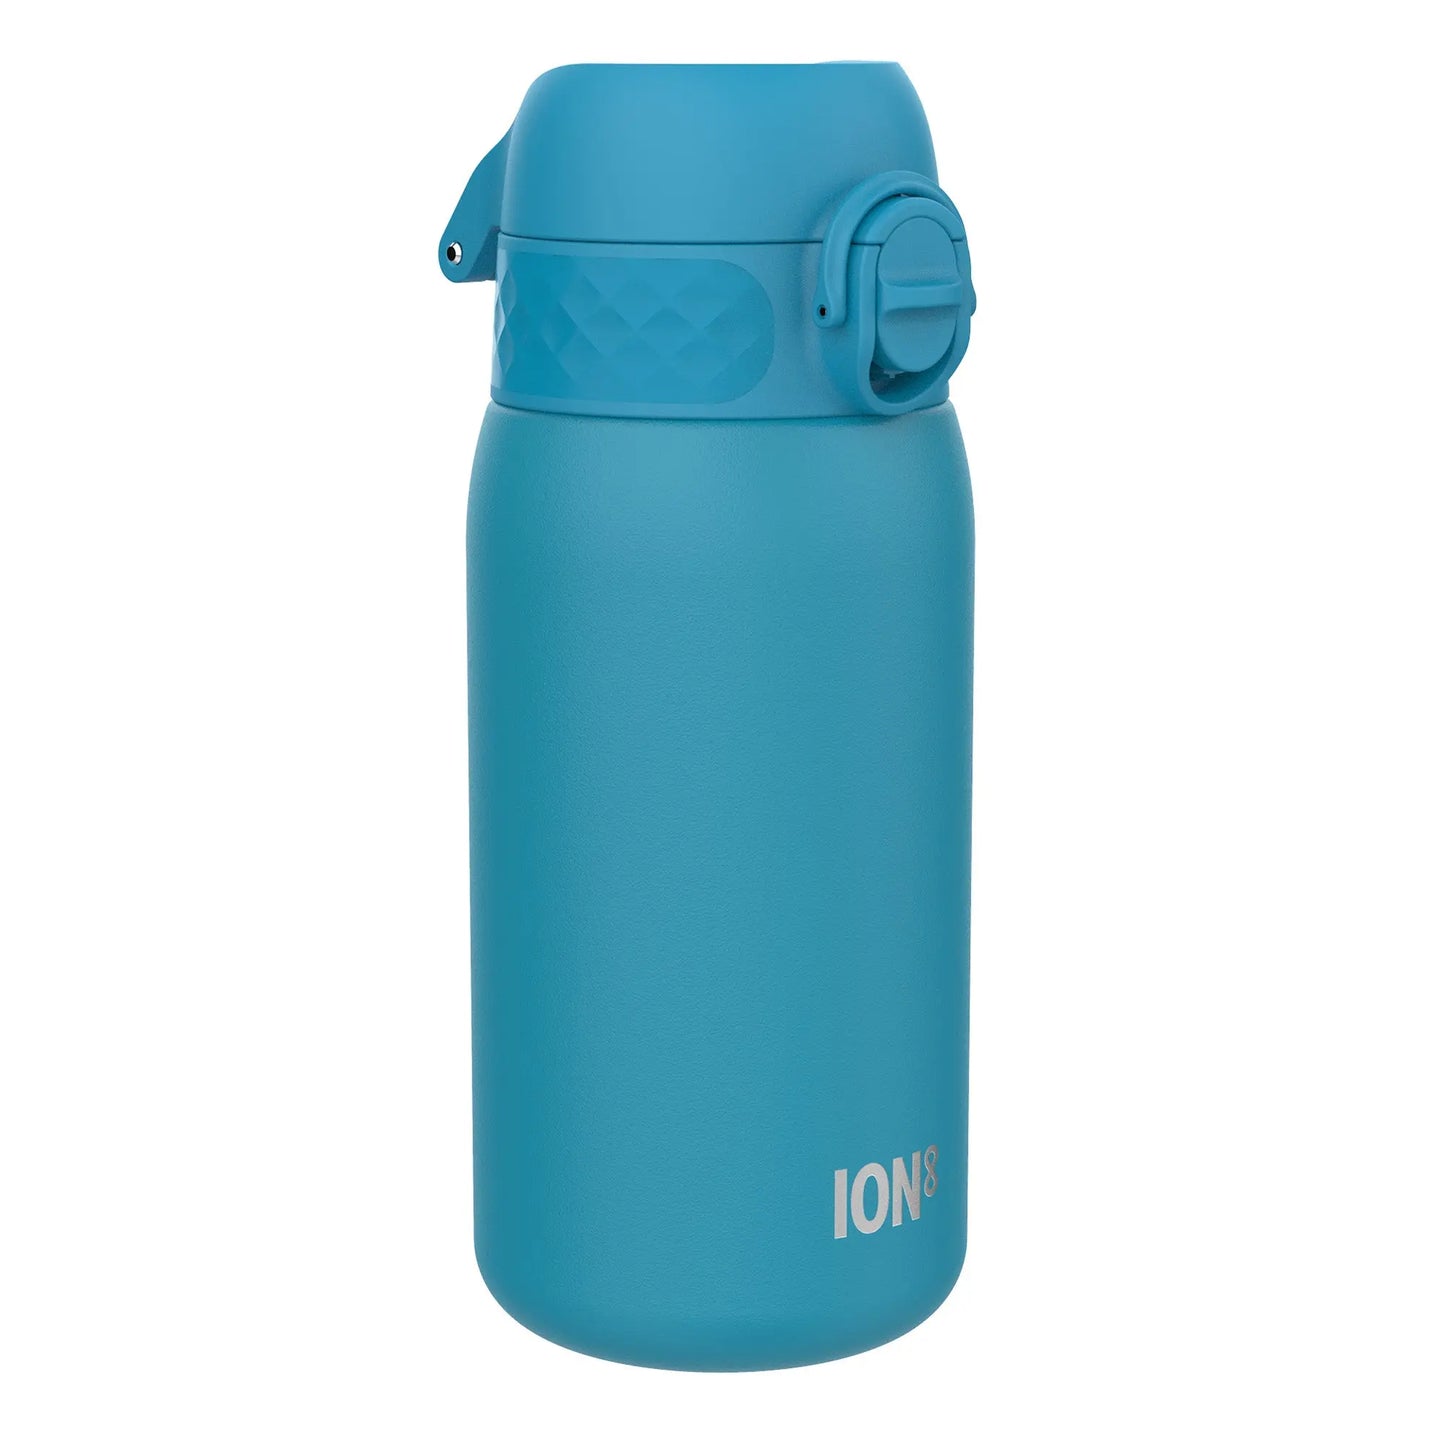 Leak Proof Water Bottle, Stainless Steel, Blue, 400ml (13oz) Ion8